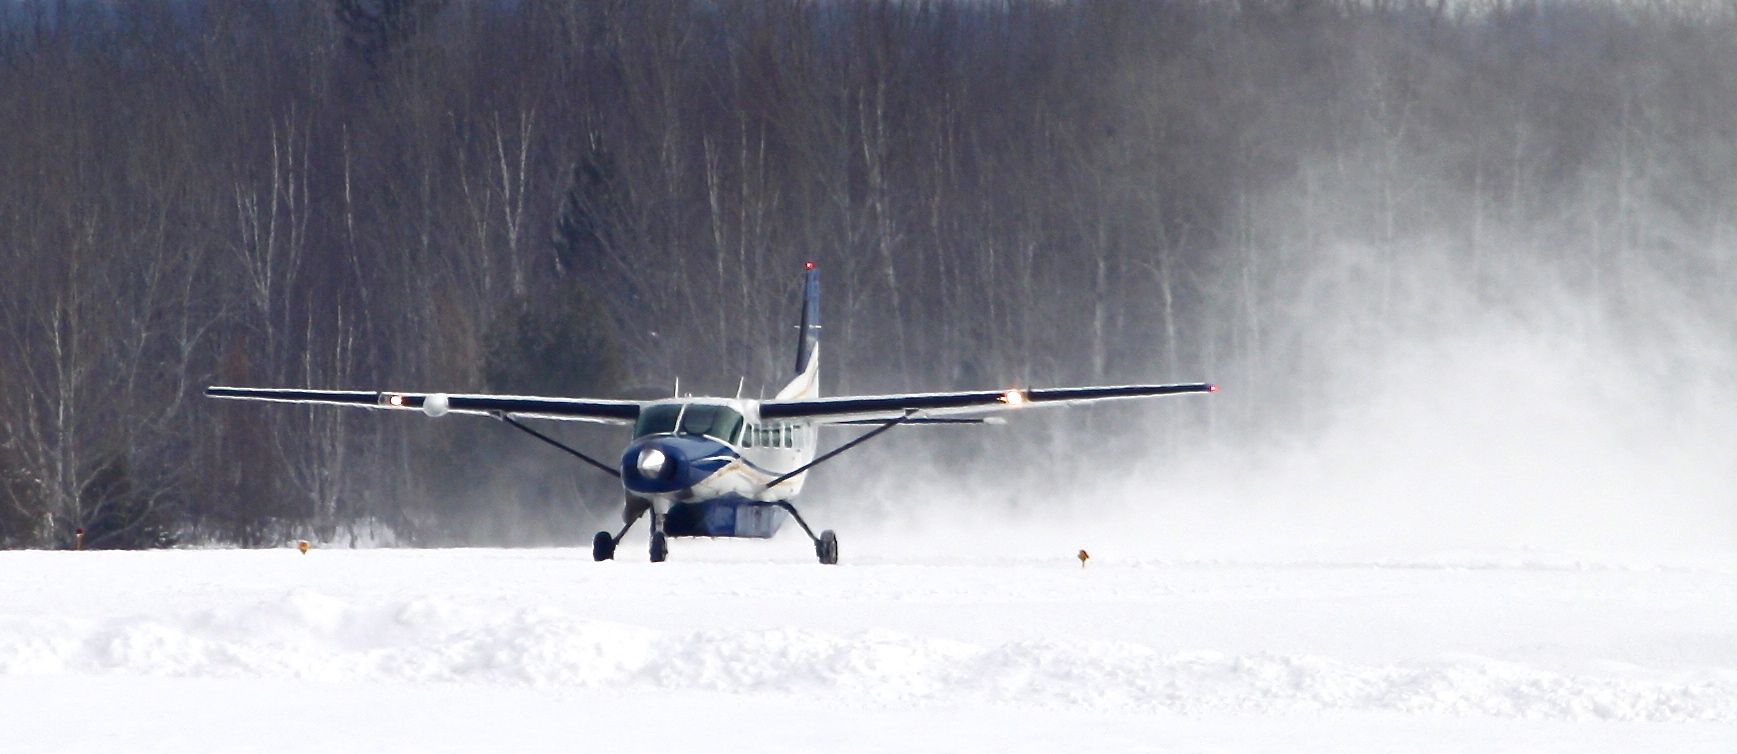 Cessna Caravan (N4118K) - Air Choice One flight 2803 taking off runway 27